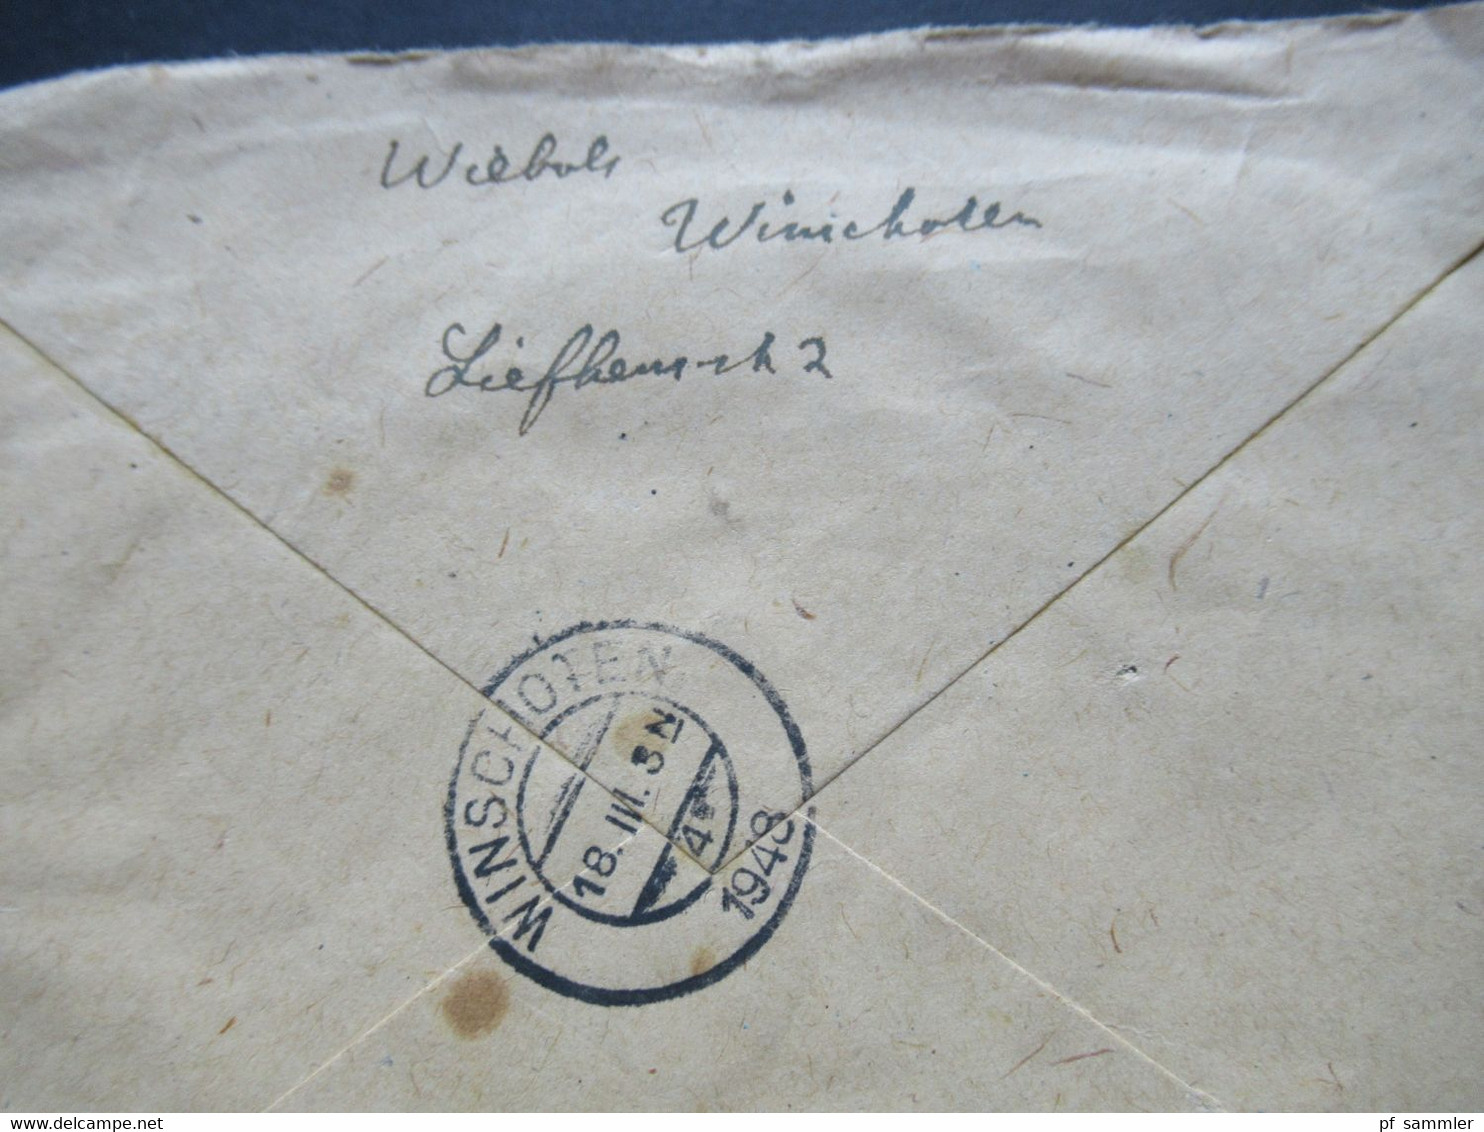 Niederlande 1948 Königin Wilhelmina MeF Stempel Winschoten Nach Northeim Hannover Russische Zone - Briefe U. Dokumente